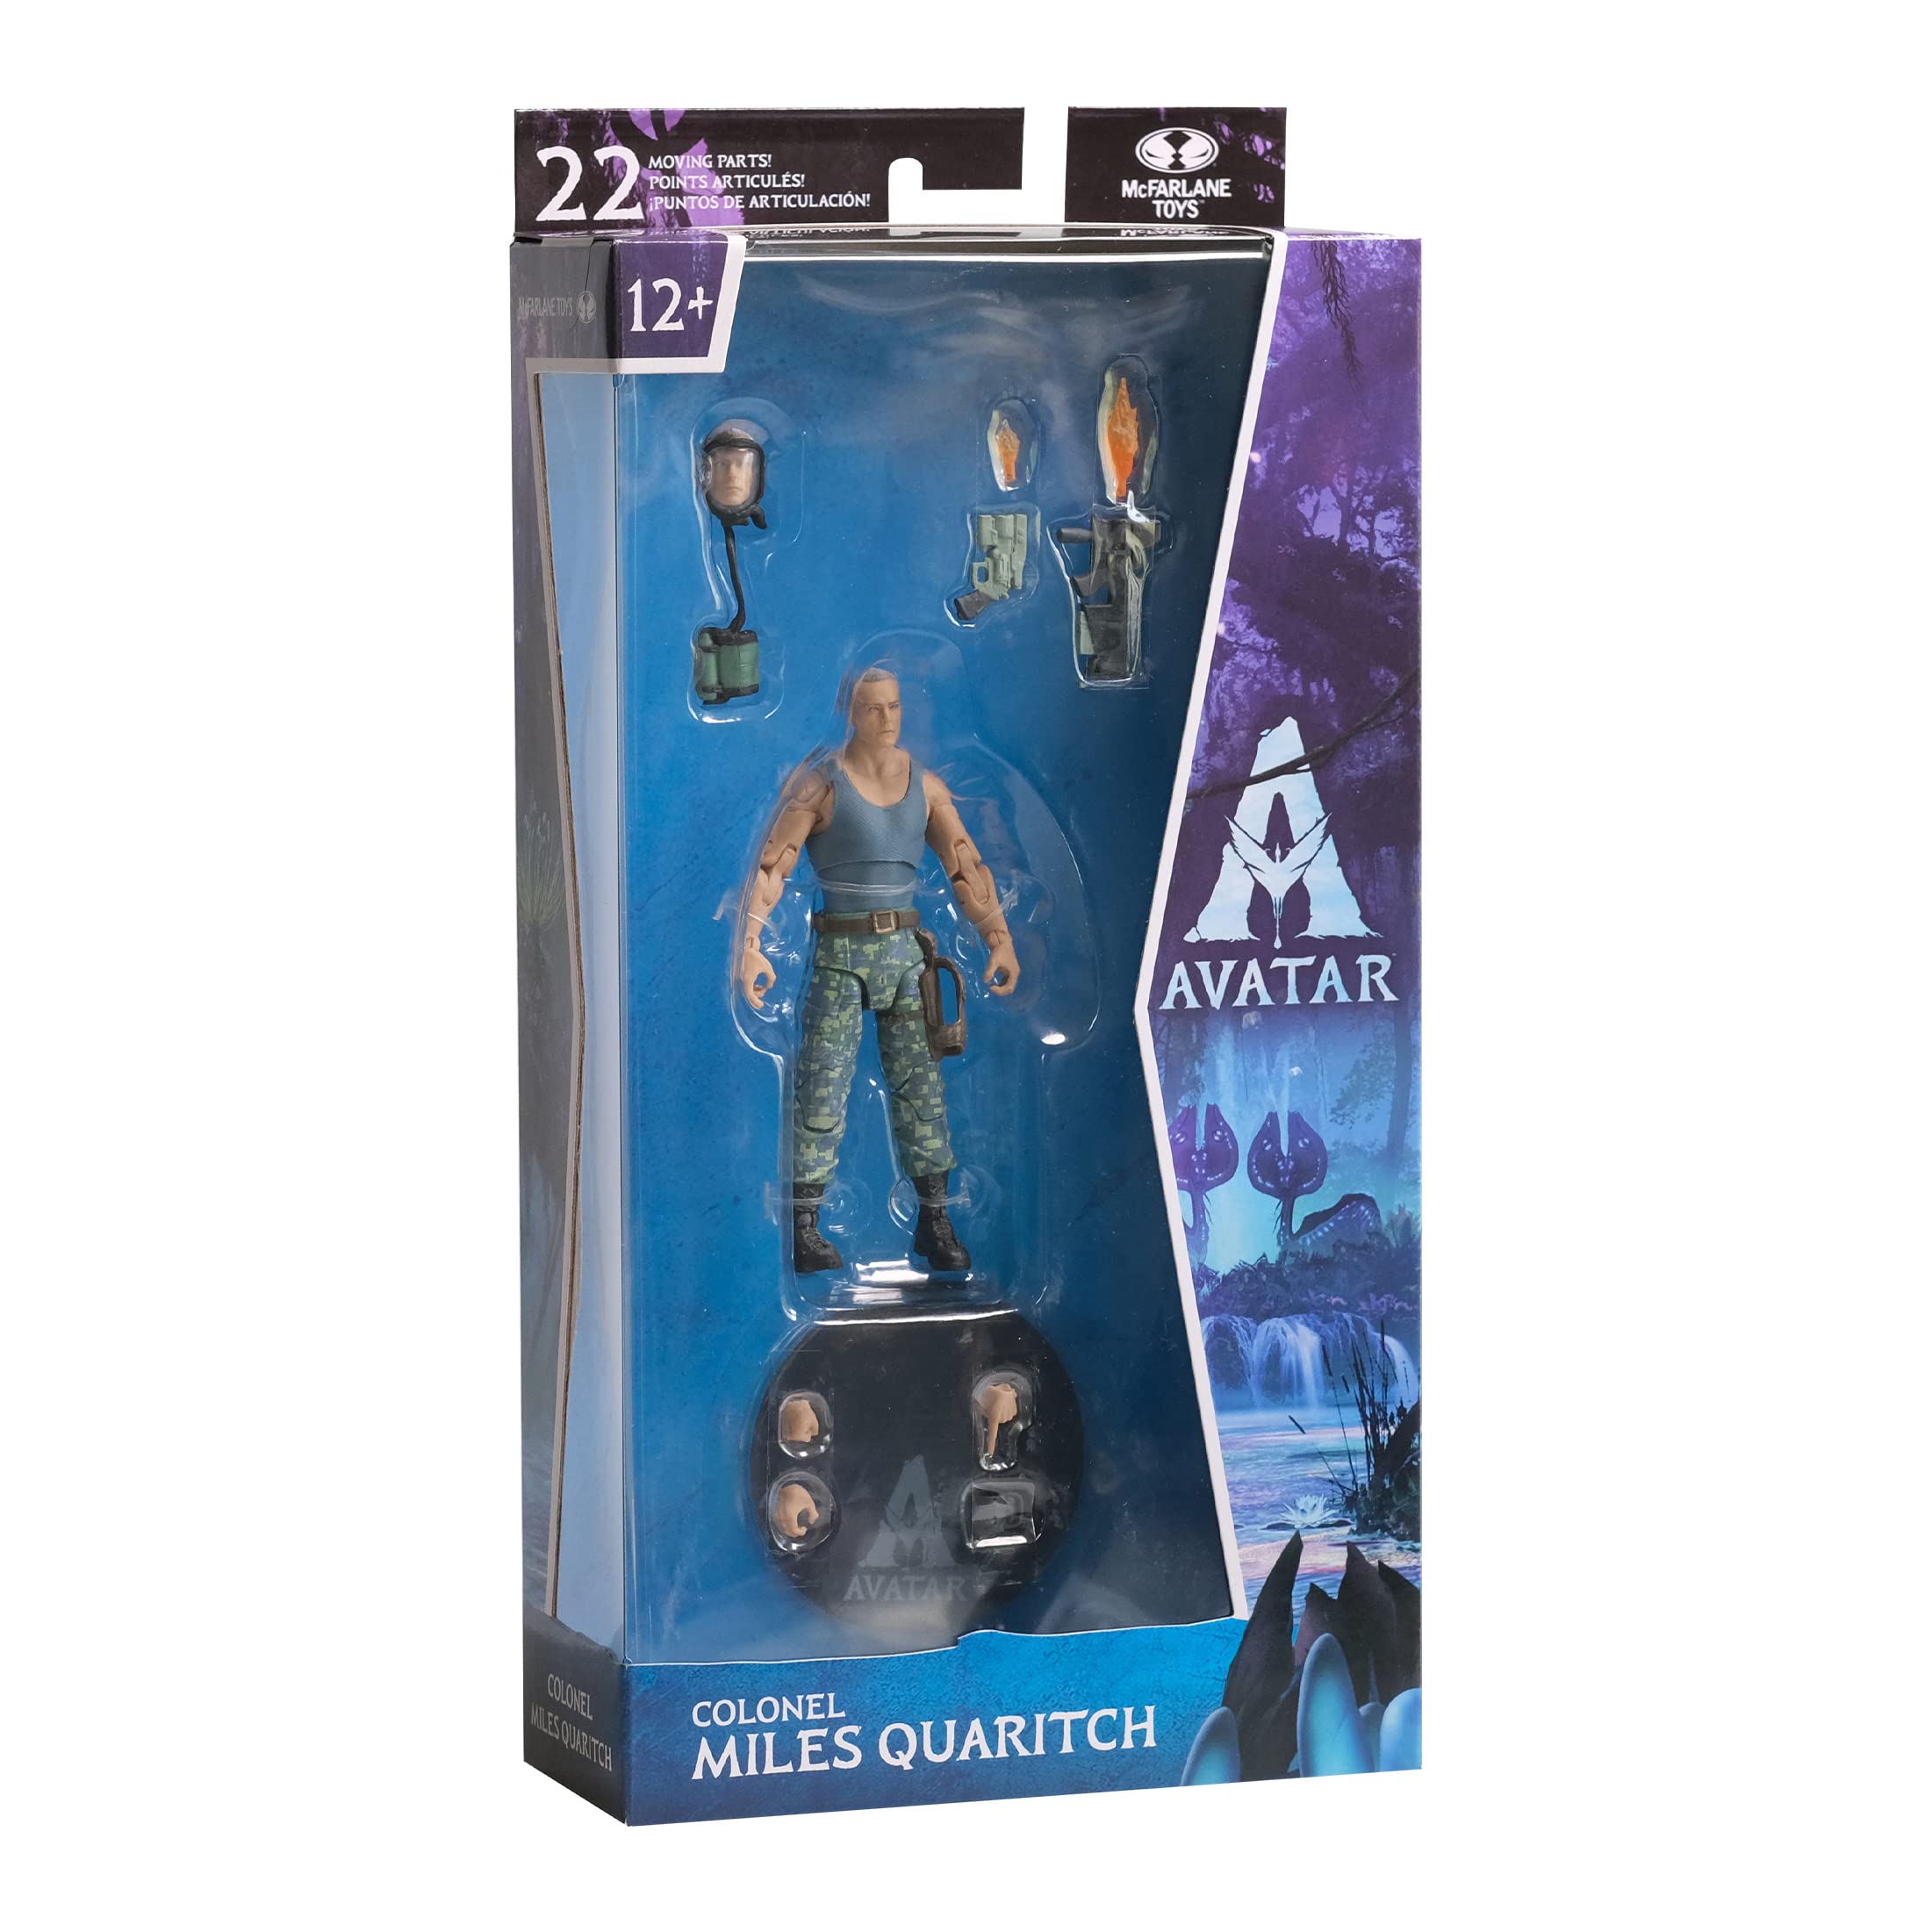 Những chiếc đồ chơi McFarlane của nhân vật Police Colonel Miles Quaritch trong bộ phim Avatar đang nhận được rất nhiều sự quan tâm từ các fan hâm mộ. Với thiết kế chân thực, chúng mang lại sự thỏa mãn cho những người yêu thích bộ phim này.